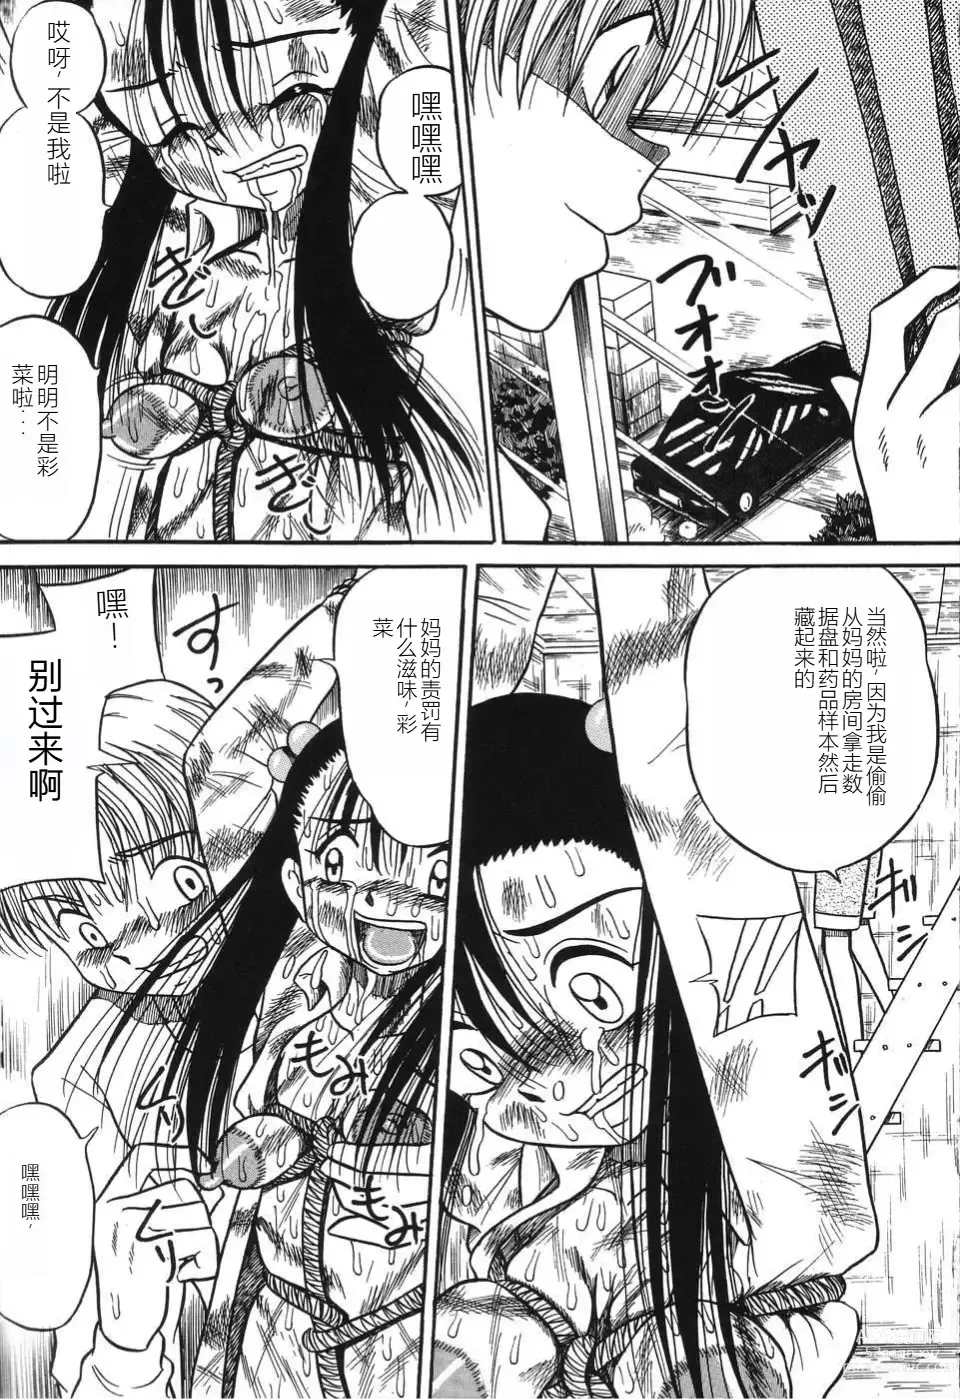 Page 9 of manga Imouto Bakunyuu Shibori